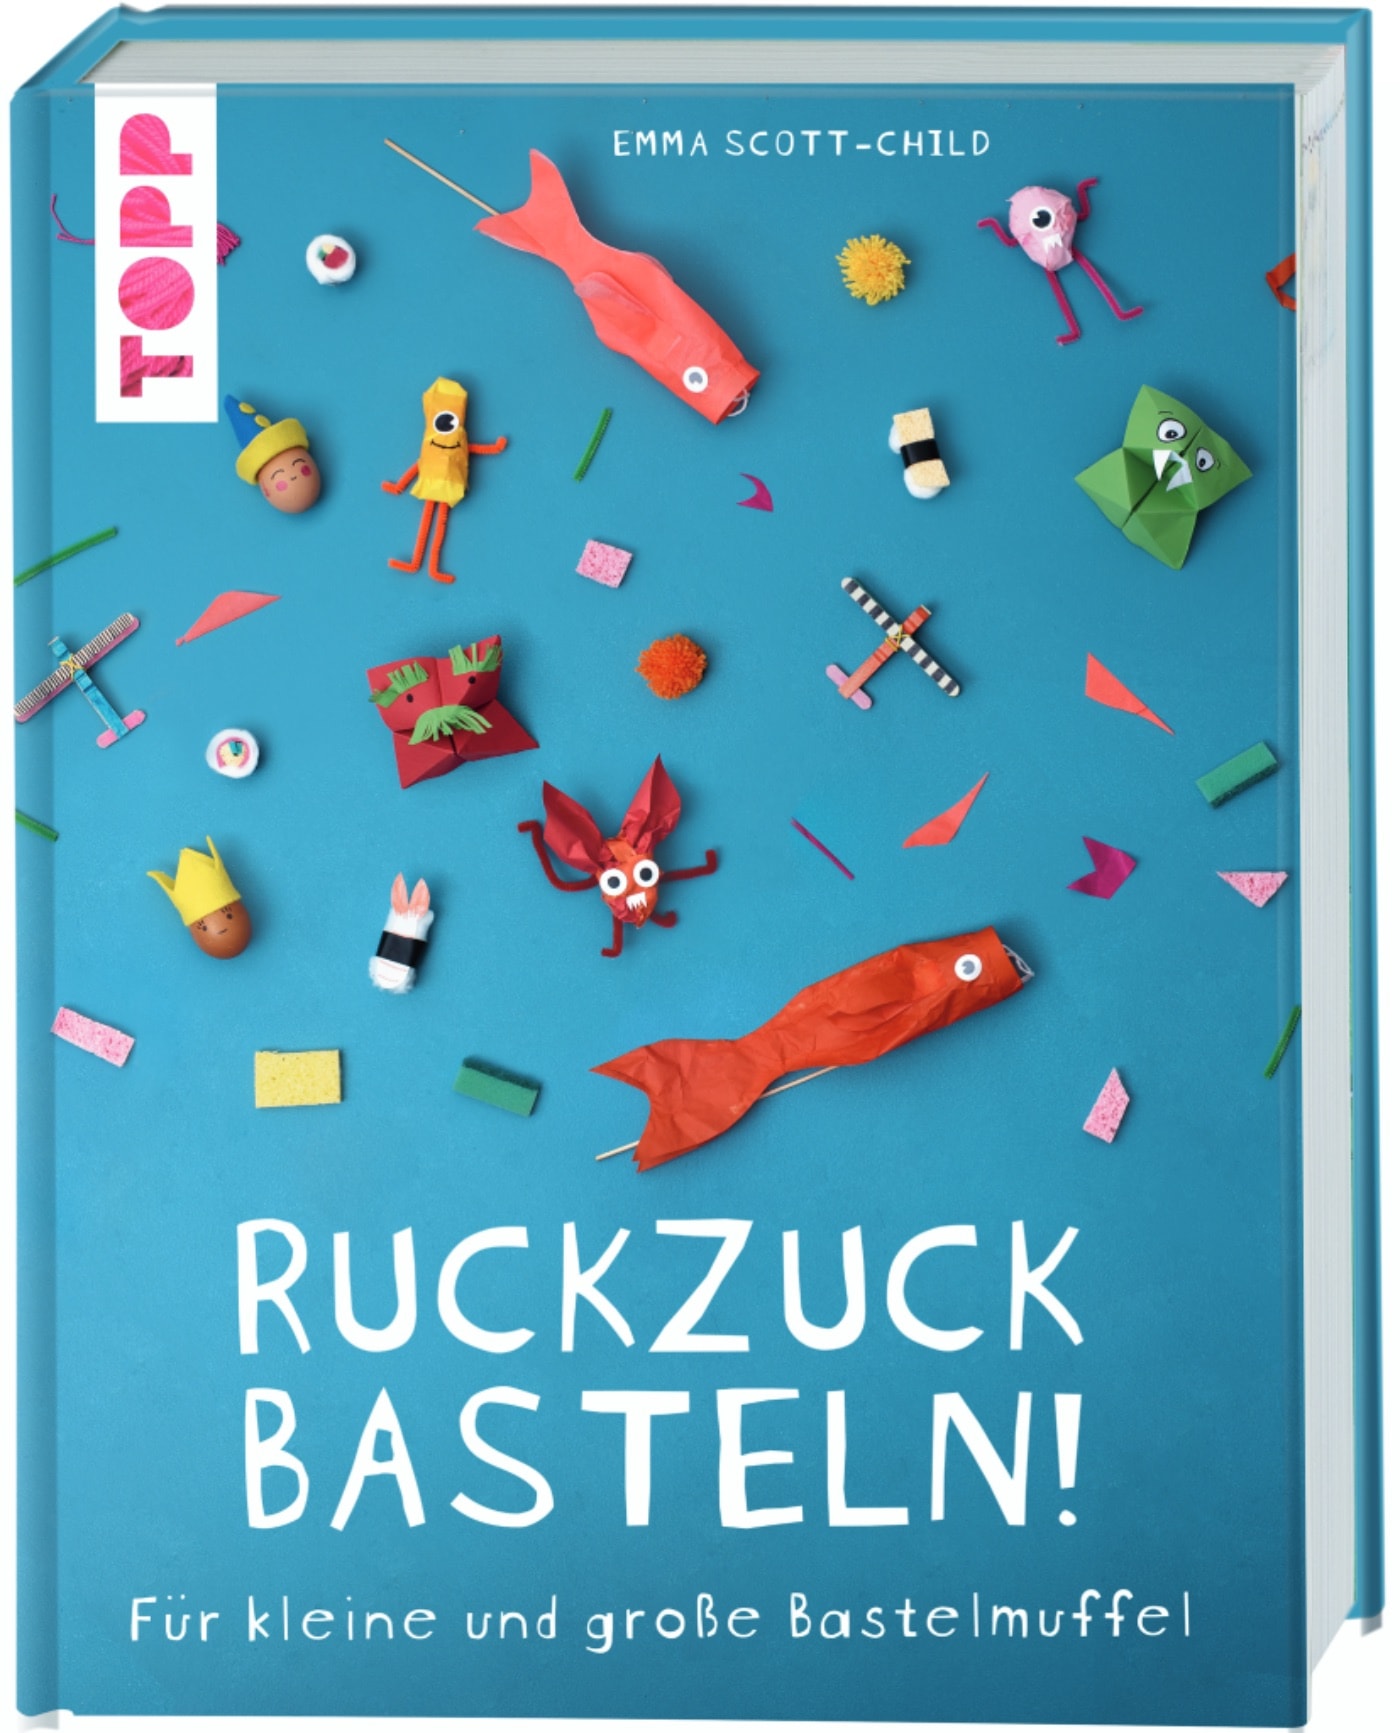 Bastelbuch für Kinder mit Ruckzuck-Bastelanleitungen // HIMBEER